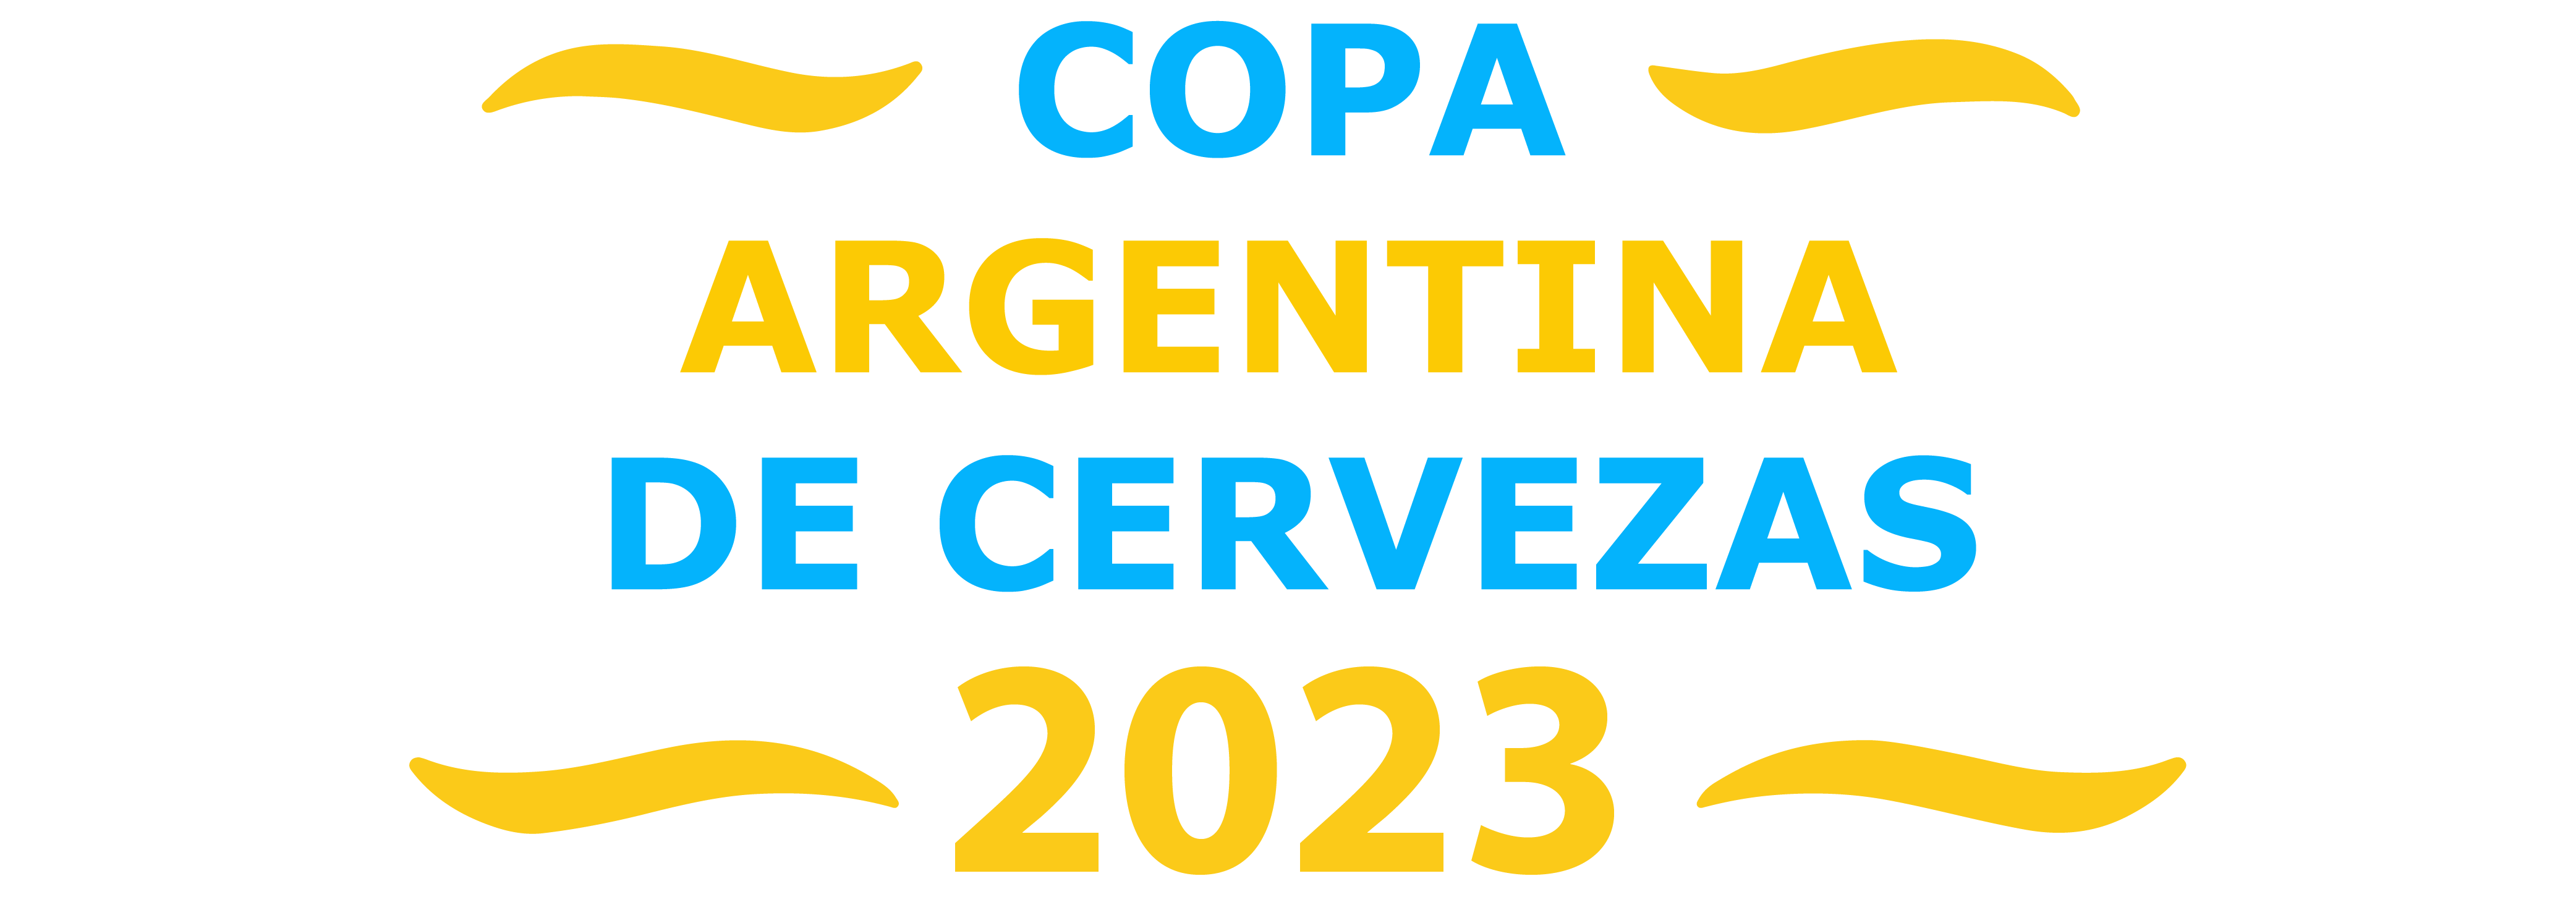 Copa Argentina de Cervezas logo 2023